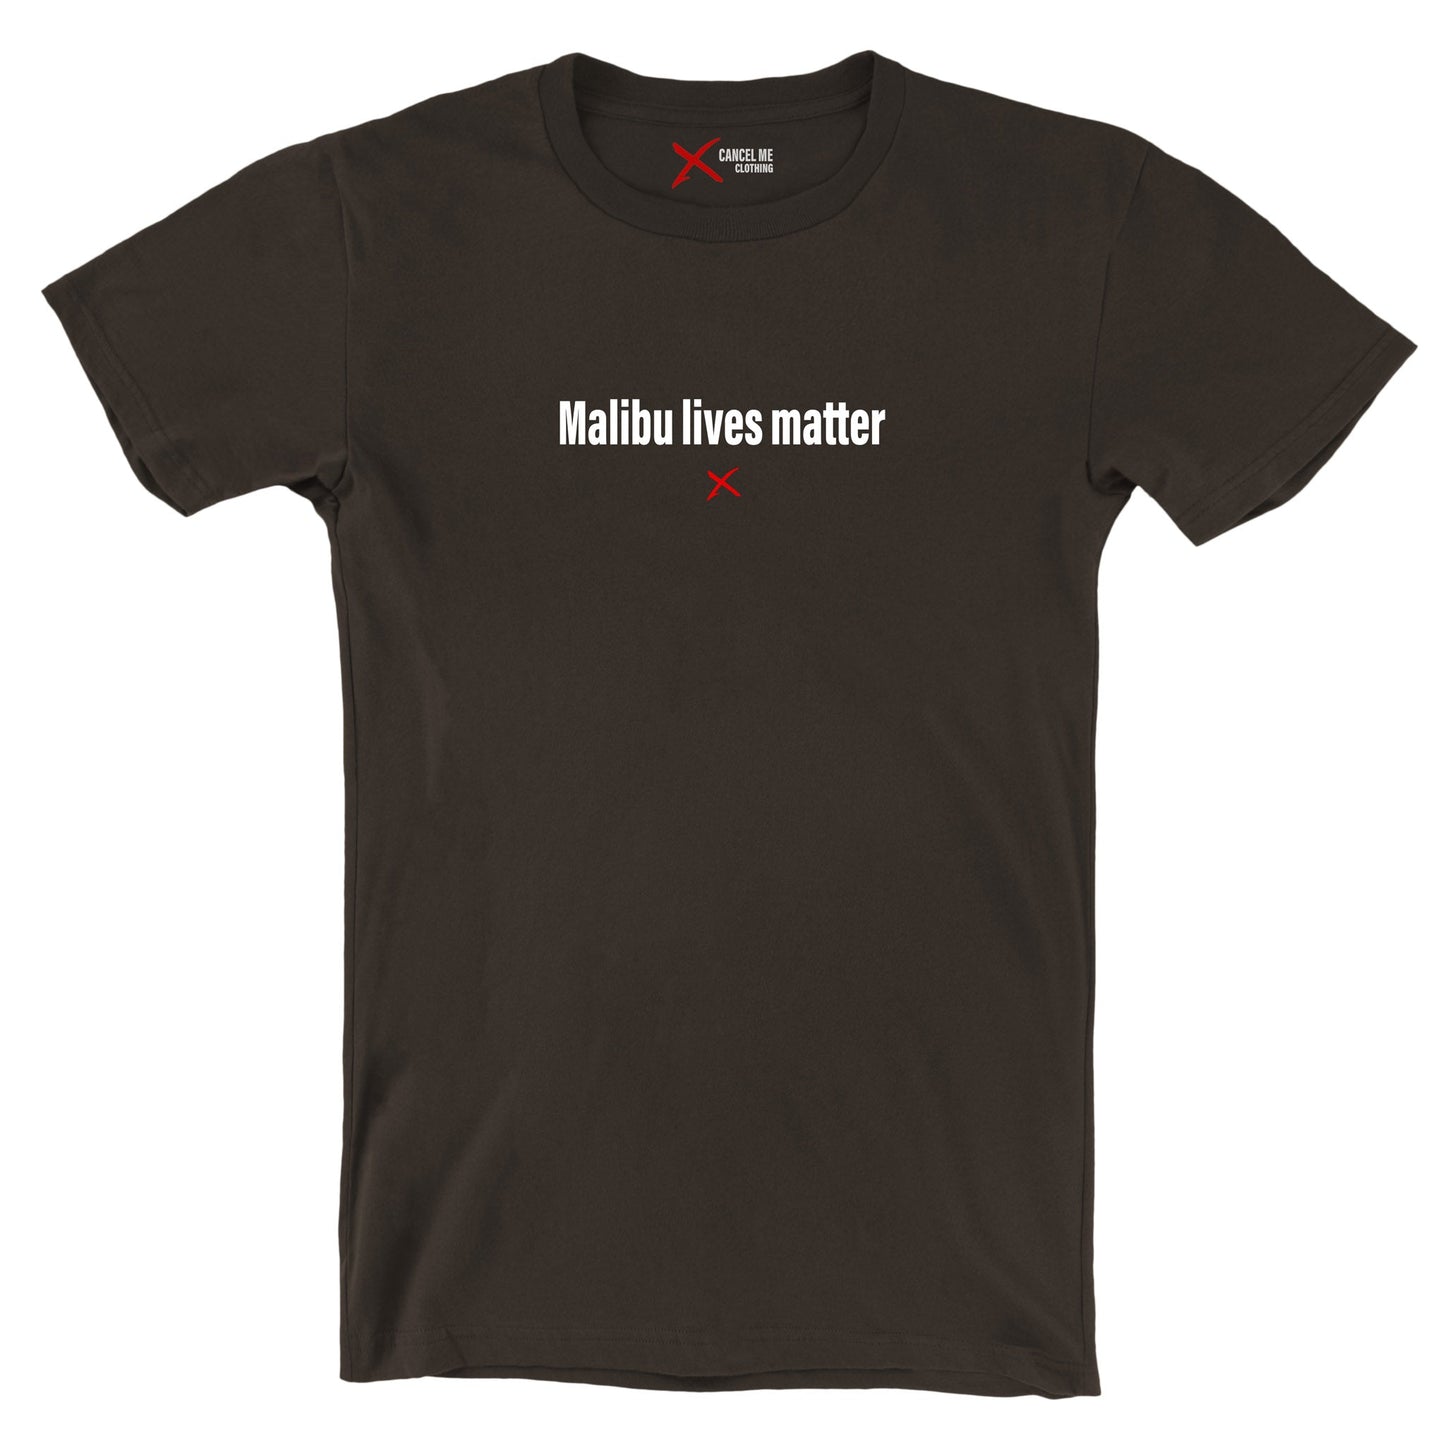 Malibu lives matter - Shirt